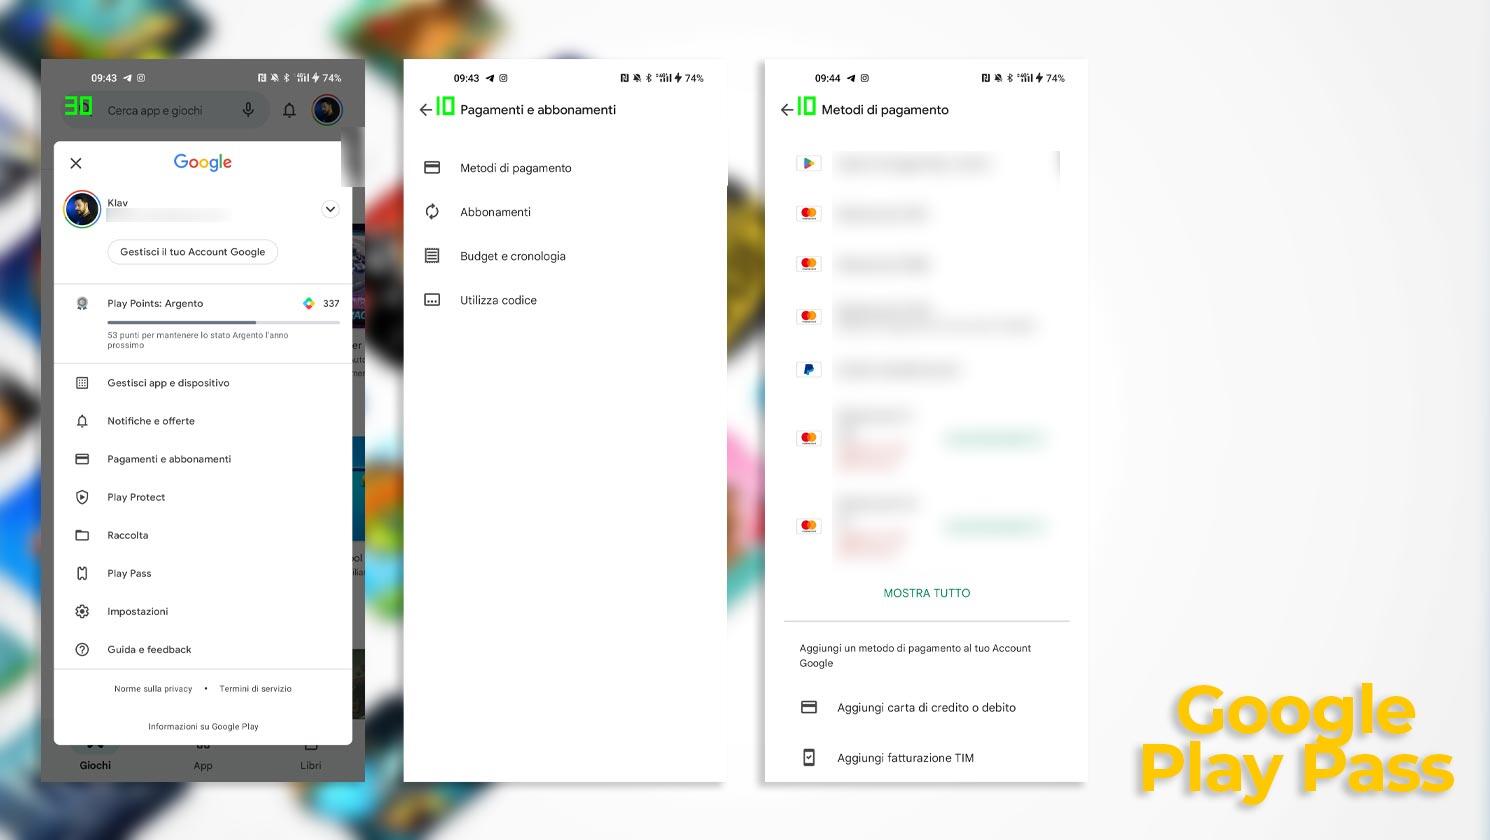 Google Play Pass - Aggiungere un metodo di Pagamento